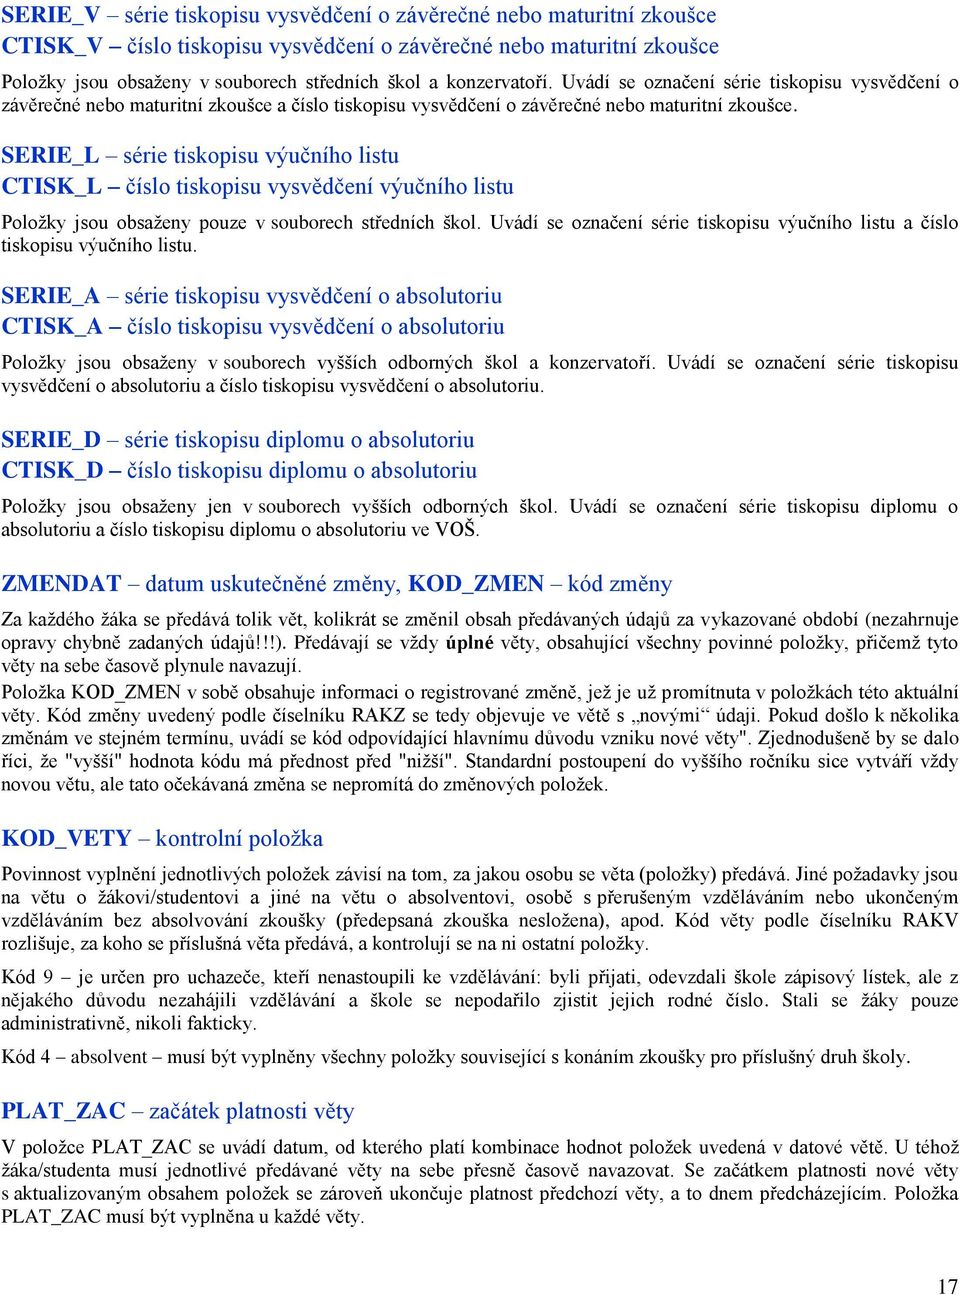 SERIE_L série tiskopisu výučního listu CTISK_L číslo tiskopisu vysvědčení výučního listu Položky jsou obsaženy pouze v souborech středních škol.